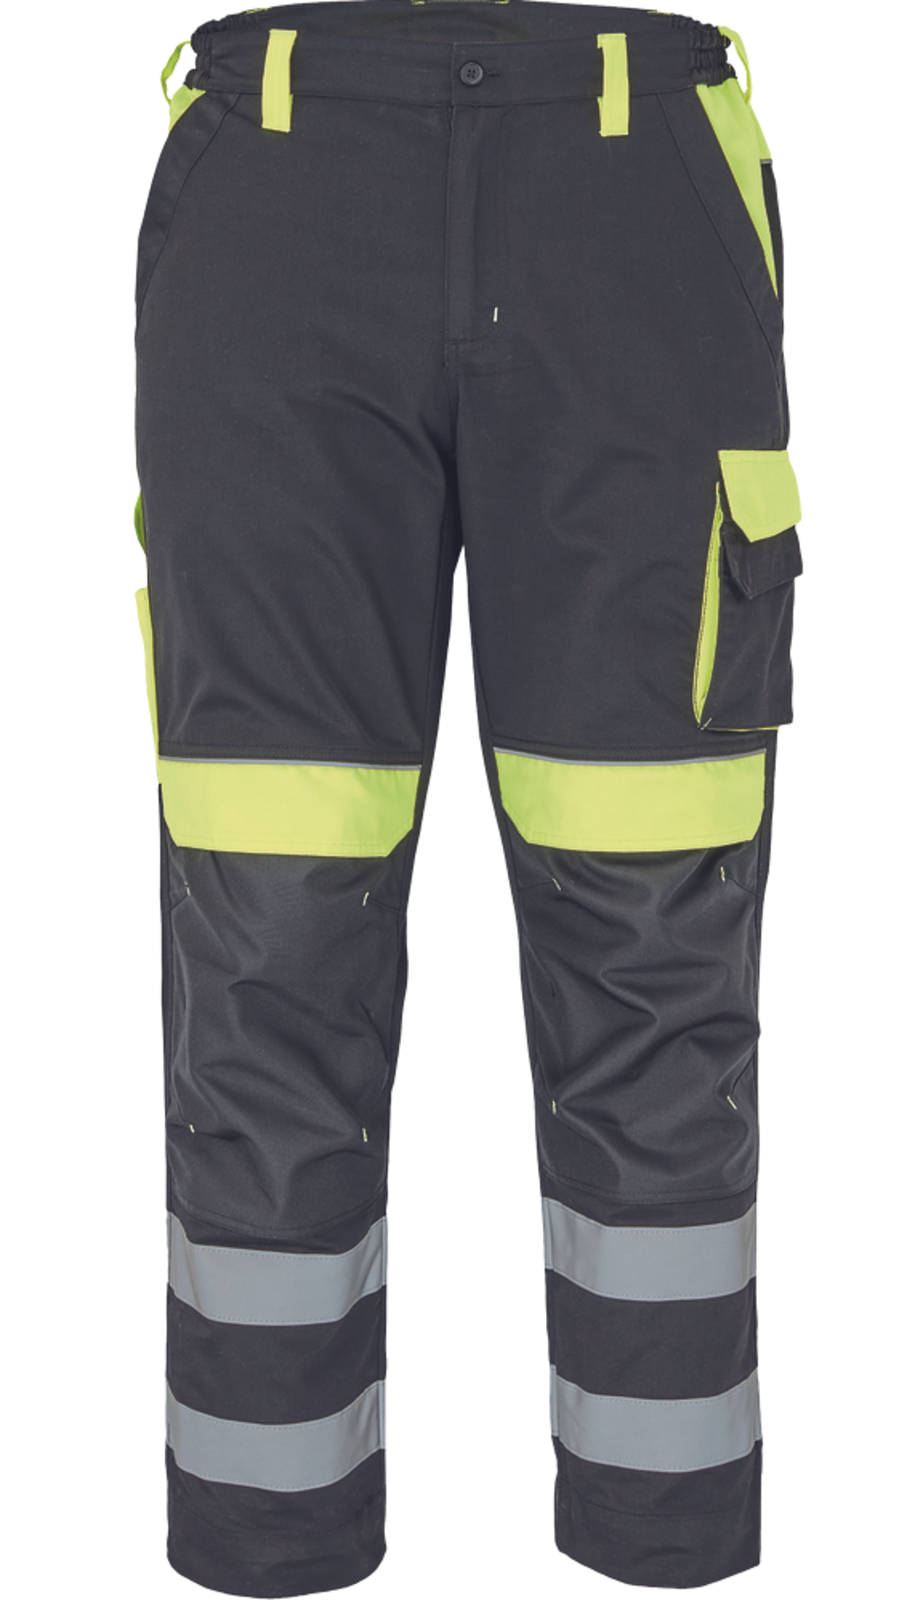 Pracovné nohavice s reflexnými pruhmi Cerva Max Vivo Reflex  - veľkosť: 46, farba: čierna/žltá